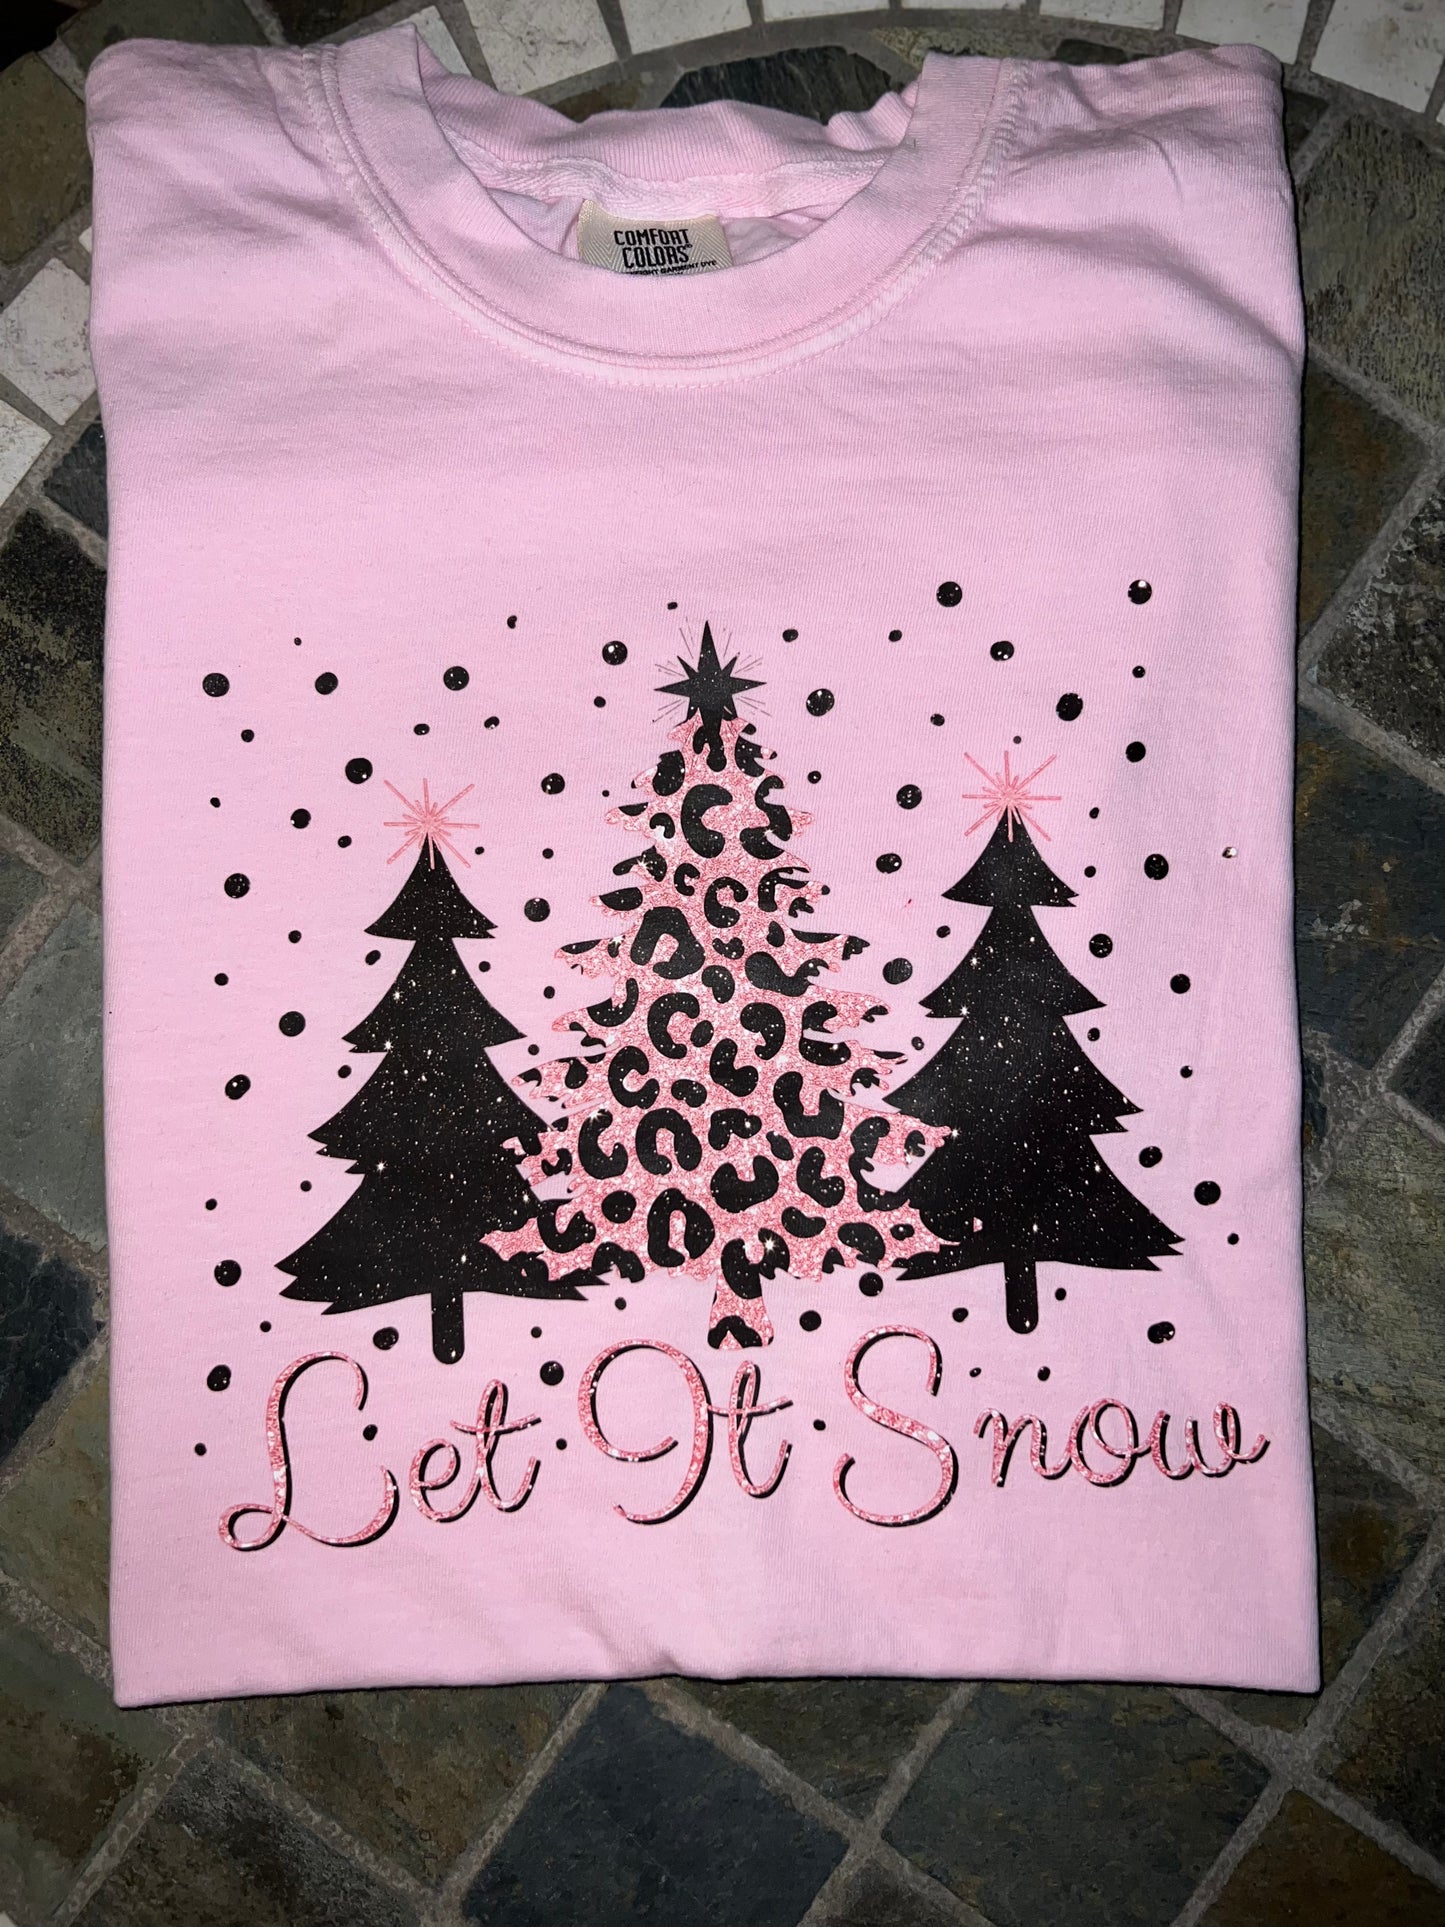 Let It Snow T-Shirt